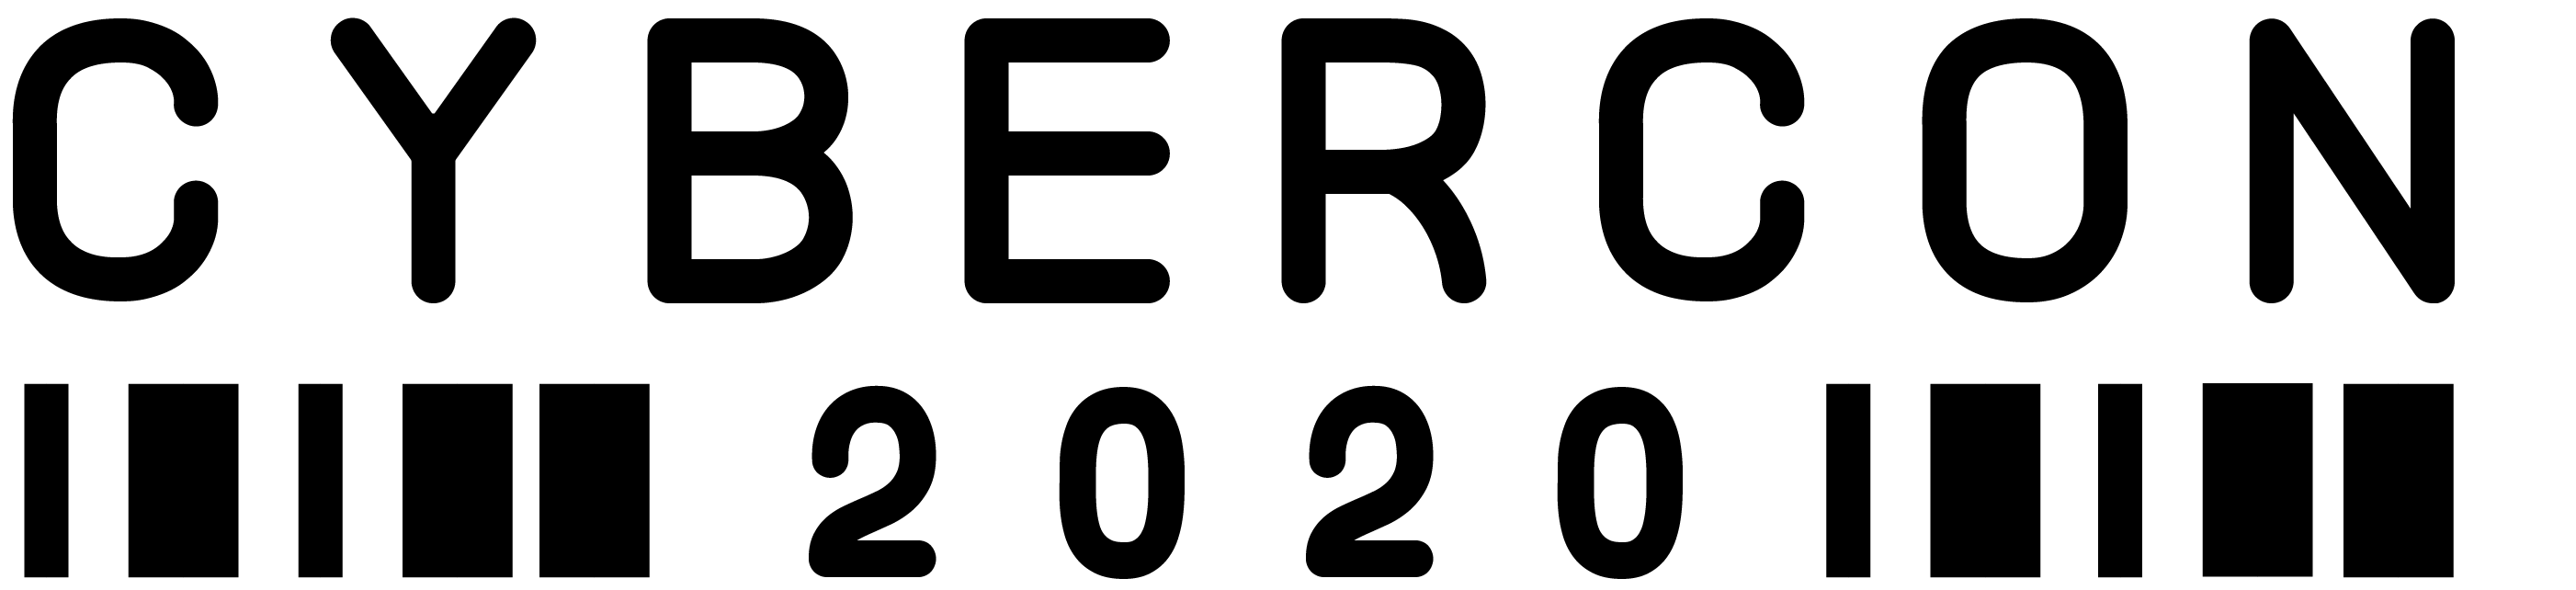 CyberCon Logo 2020.png